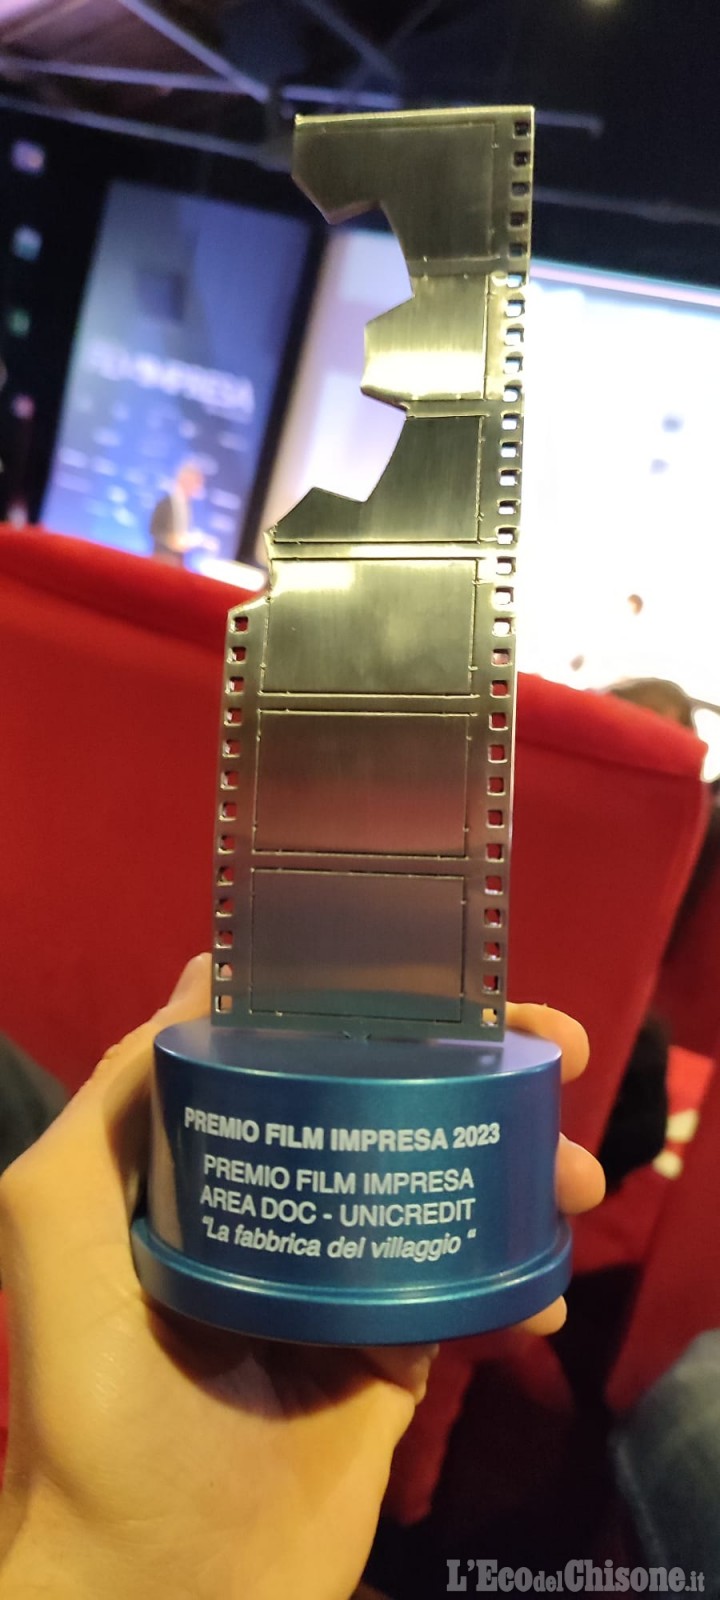 La Fabbrica del Villaggio vince a Roma il premio "Film Impresa" area Doc